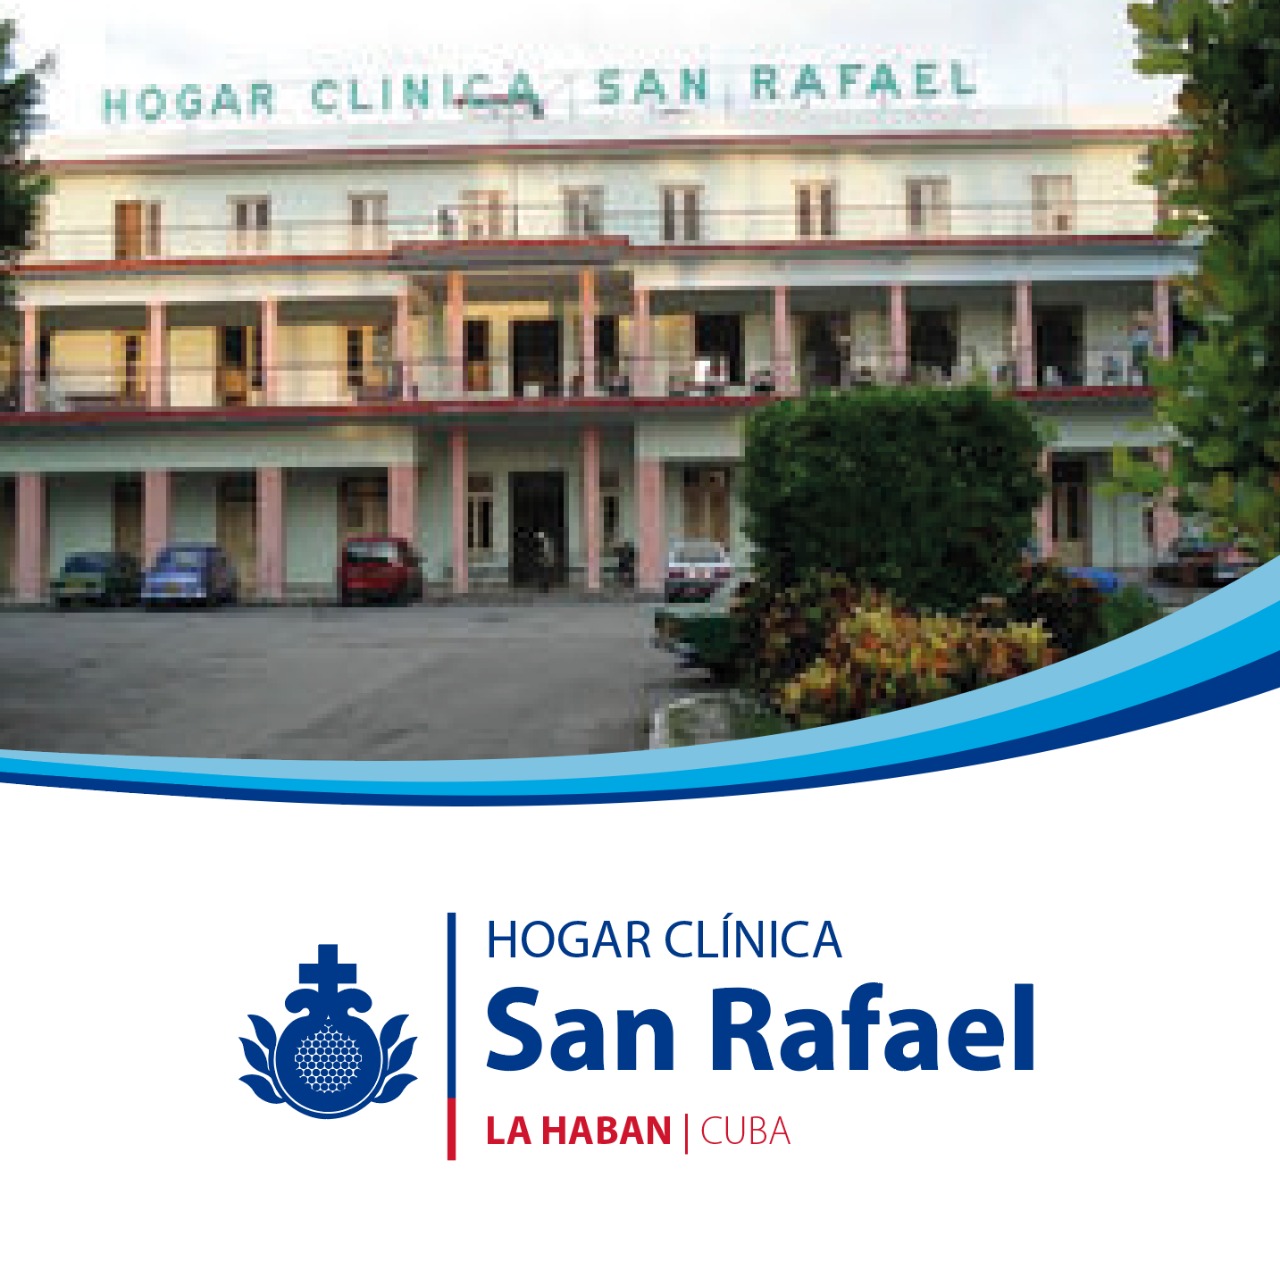 Centro Cuba Hogar clinica San Rafael | Orden Hospitalaria San Juan de Dios